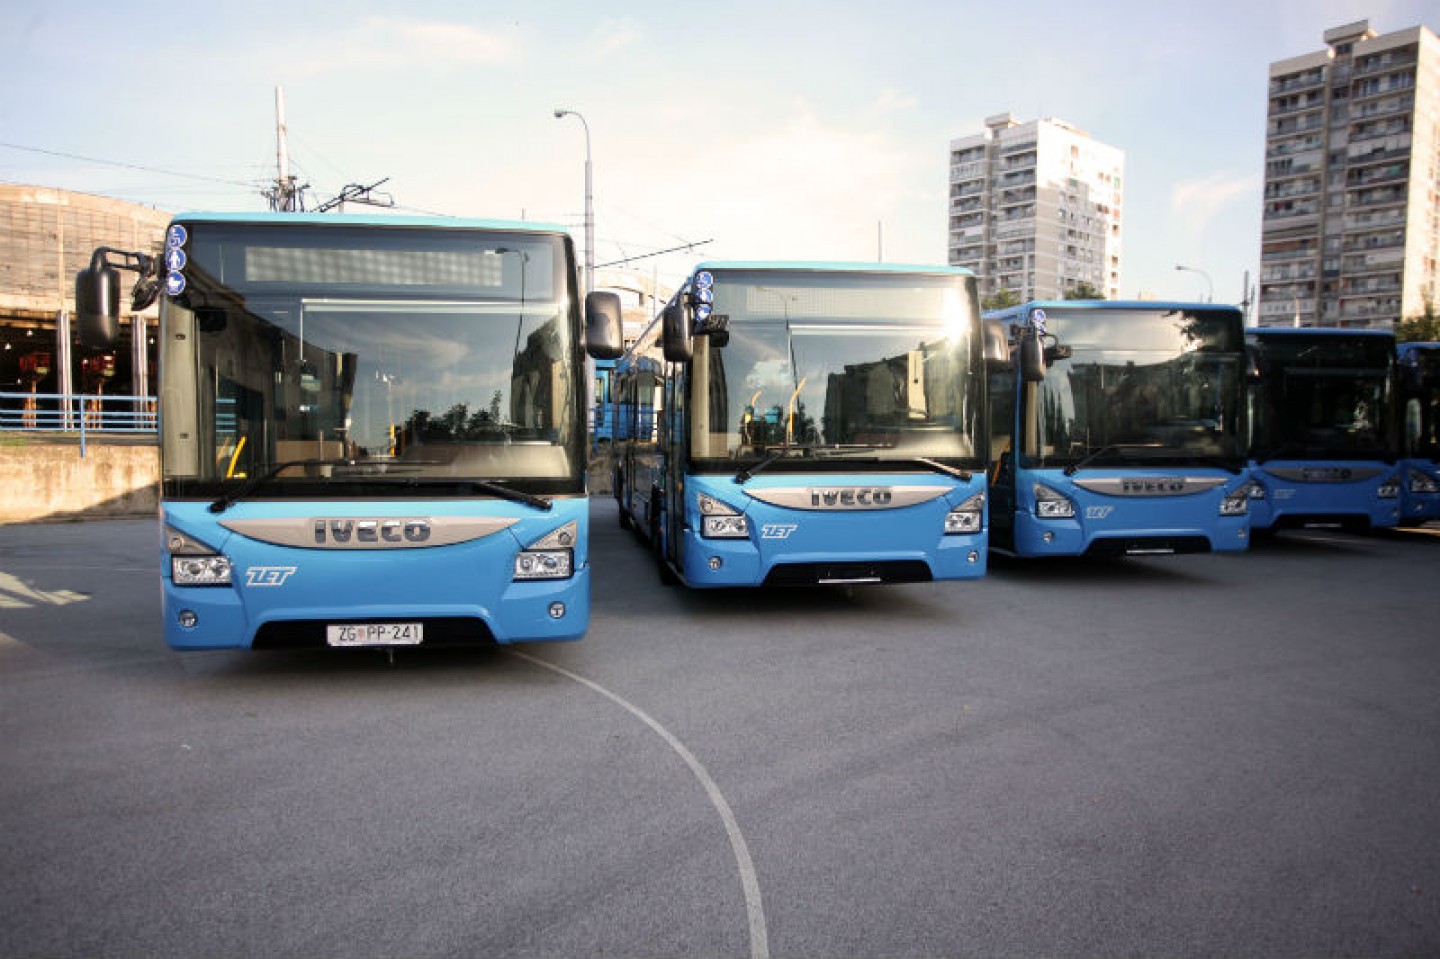 Predstavljeno pet novih niskopodnih autobusa